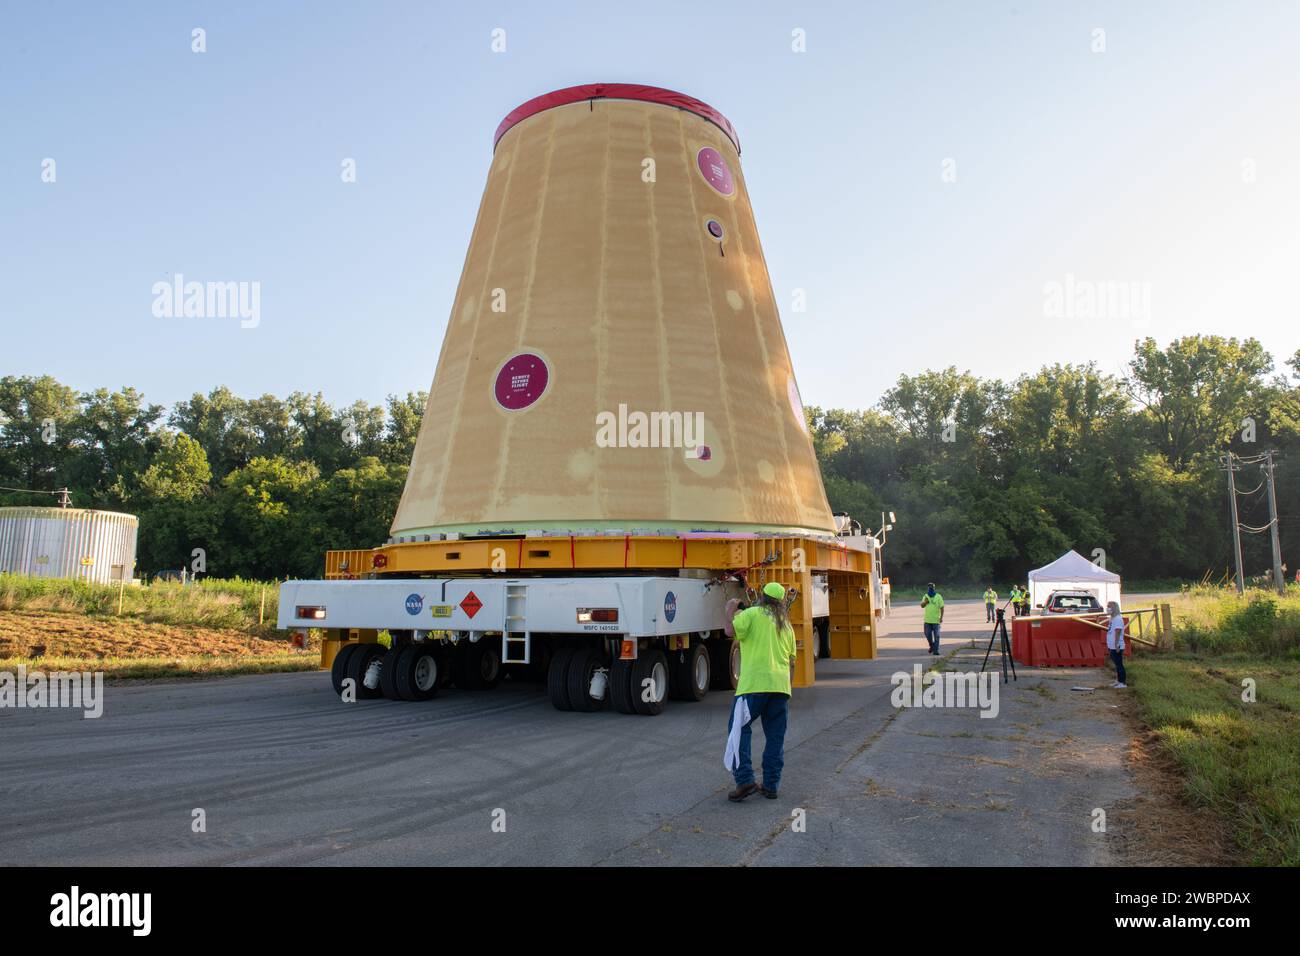 L’équipe Move charge l’adaptateur de scène du lanceur, qui fait partie de la nouvelle fusée SLS (Space Launch System) de l’agence, sur la barge Pegasus de la NASA au Marshall Space Flight Center de la NASA à Huntsville, en Alabama, en juillet 17. L’adaptateur de scène du lanceur, qui relie l’étage central de 212 pieds de haut de la fusée à l’étage supérieur de la fusée, est expédié au Kennedy Space Center de la NASA en Floride pour les préparatifs de lancement d’Artemis I. C'est la dernière pièce du matériel de fusée Artemis I SLS construit à Marshall pour être livré à Kennedy. Seulement la phase de base du SLS, actuellement en test final au Stennis Space Center ne Banque D'Images